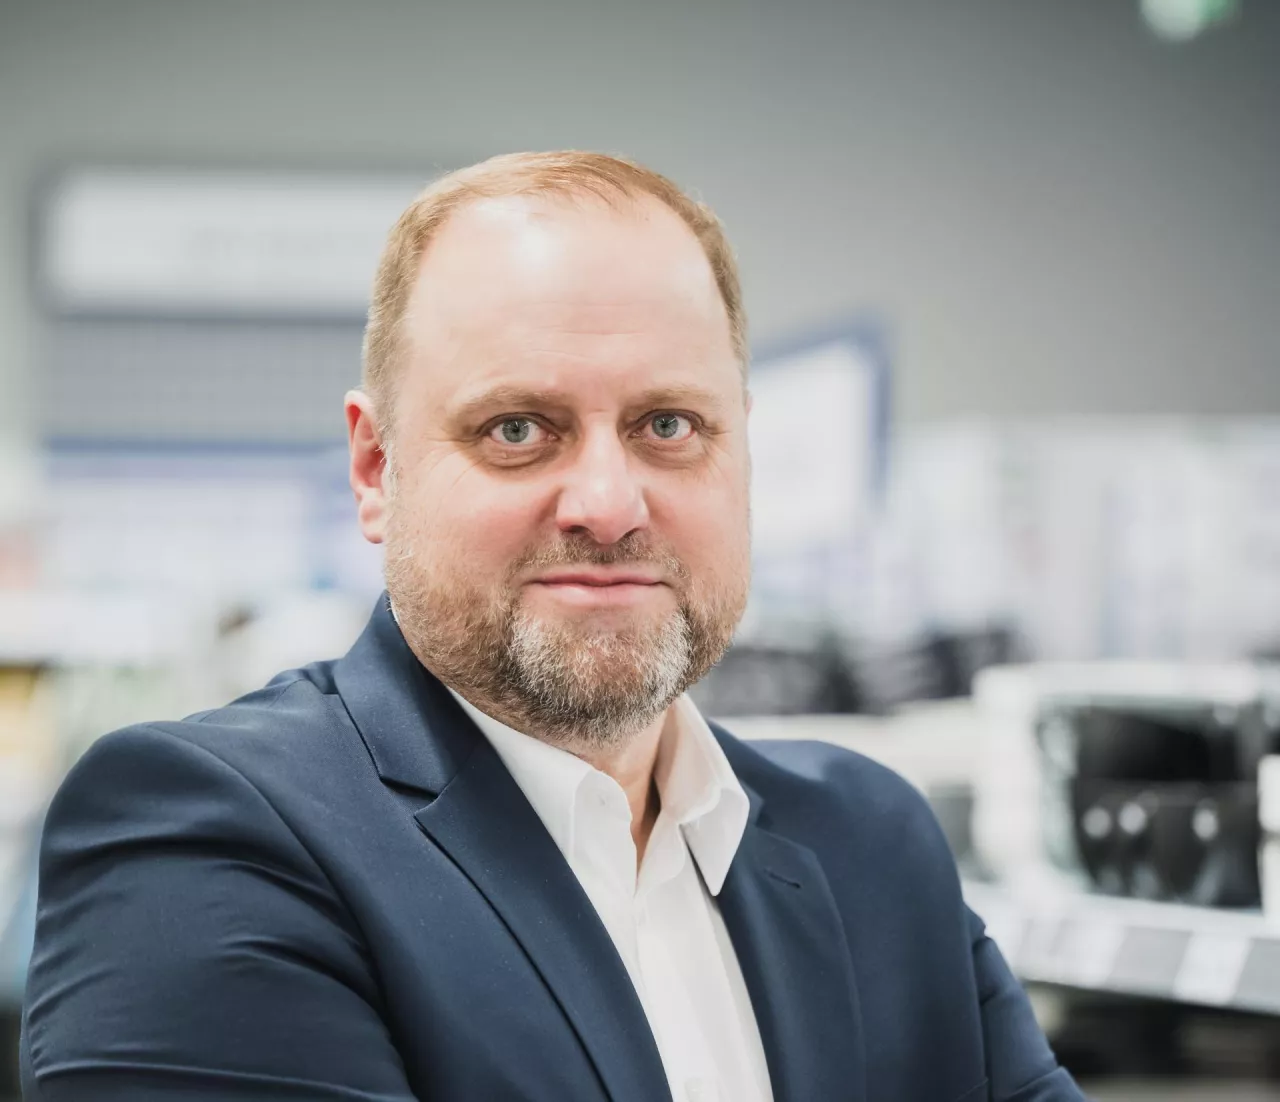 &lt;p&gt;Paweł Essel nowy dyrektor generalny sieci dyskontów Action w Polsce (Action)&lt;/p&gt;